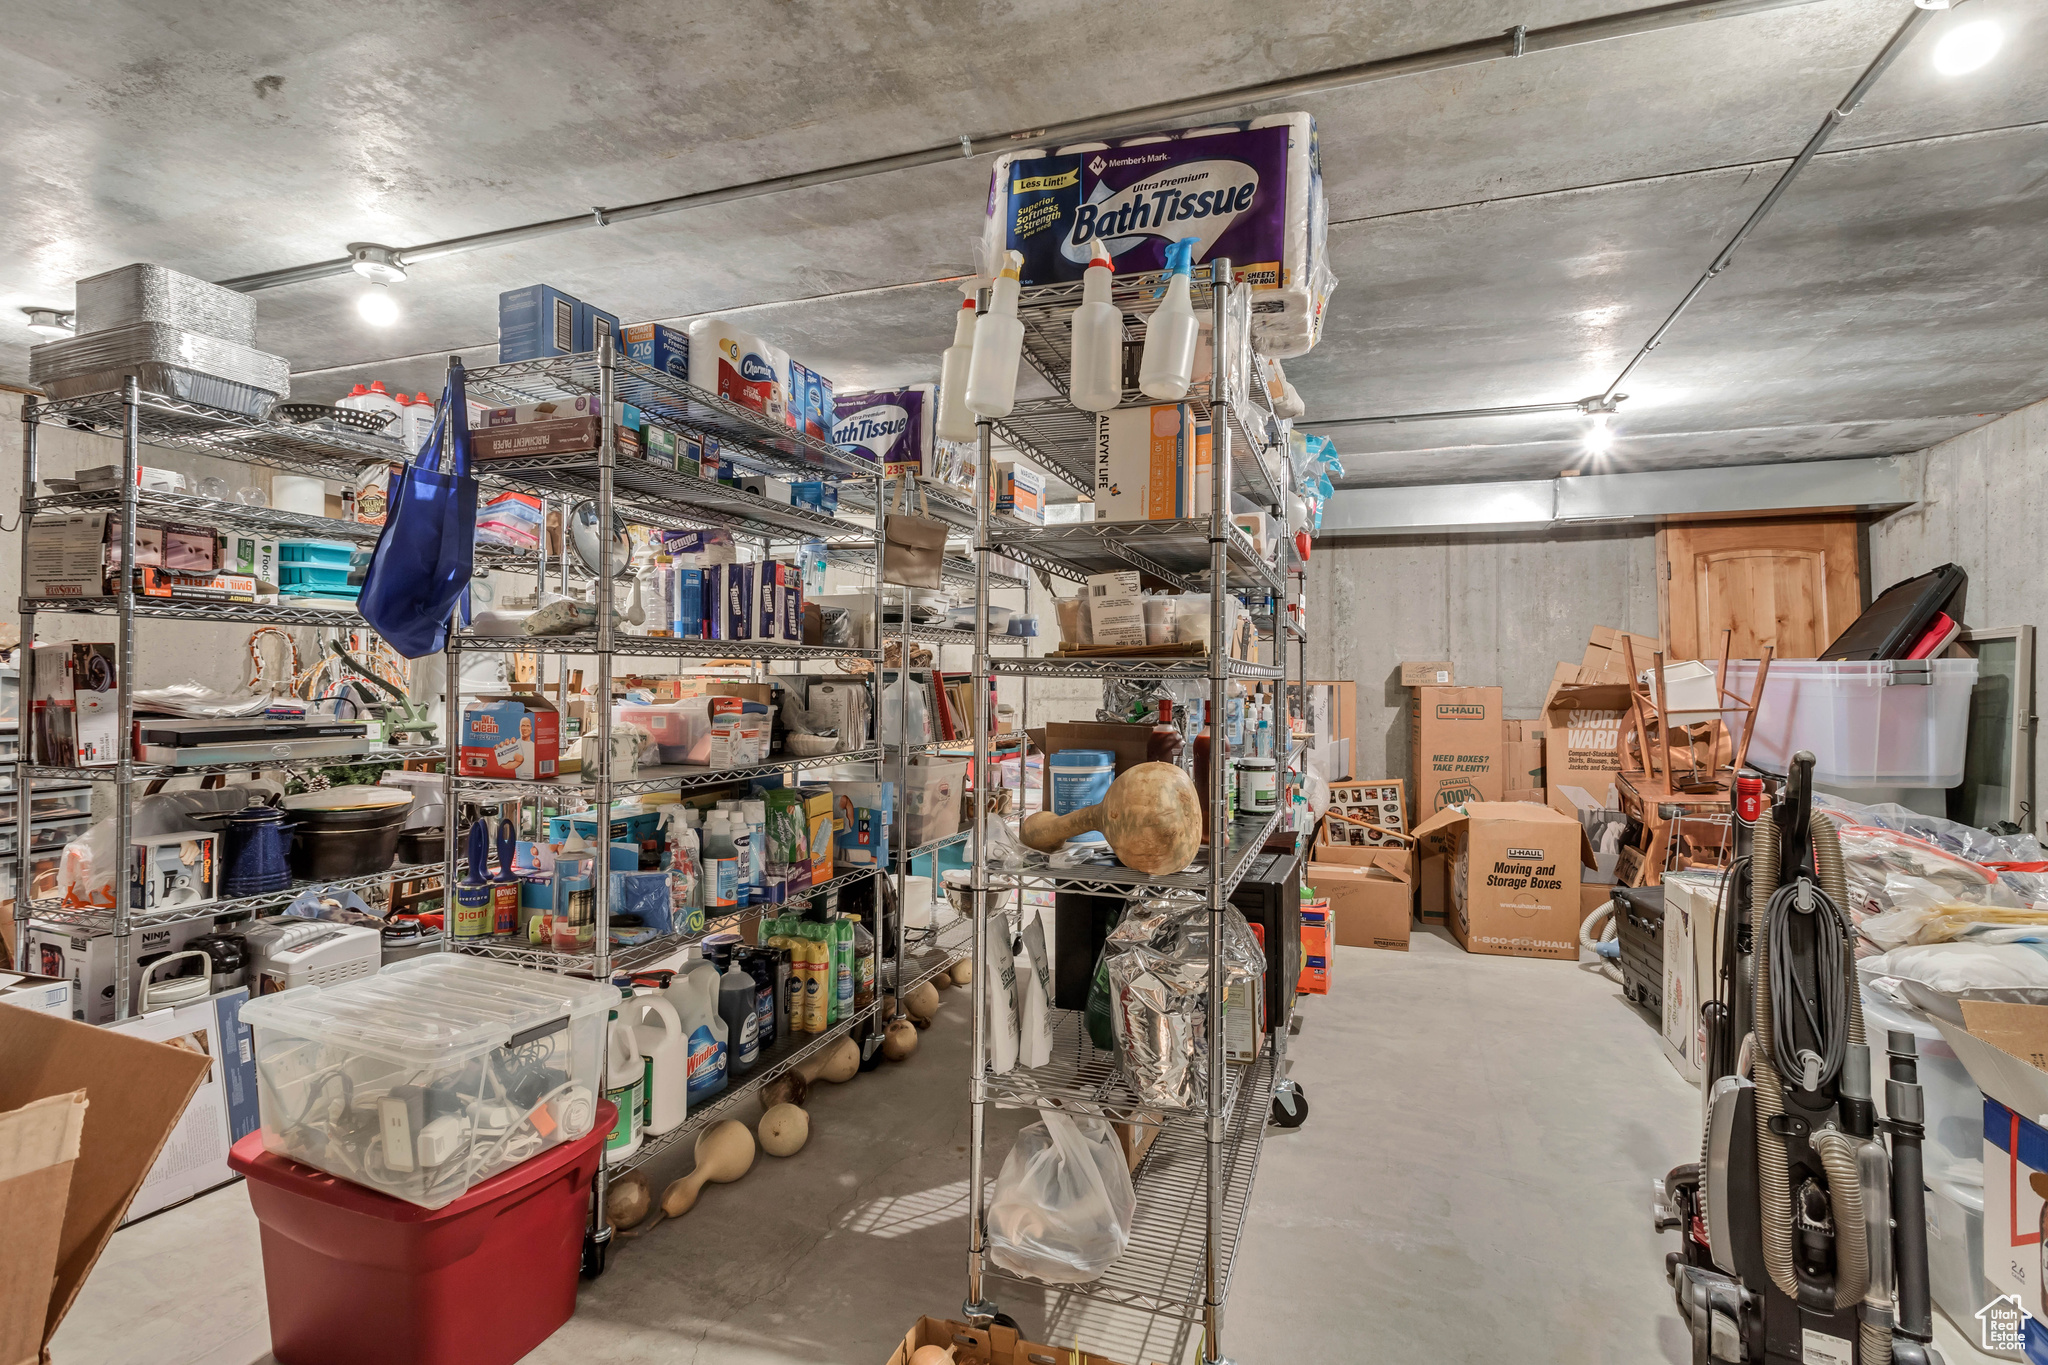 7484 basement storage under garage/theater room